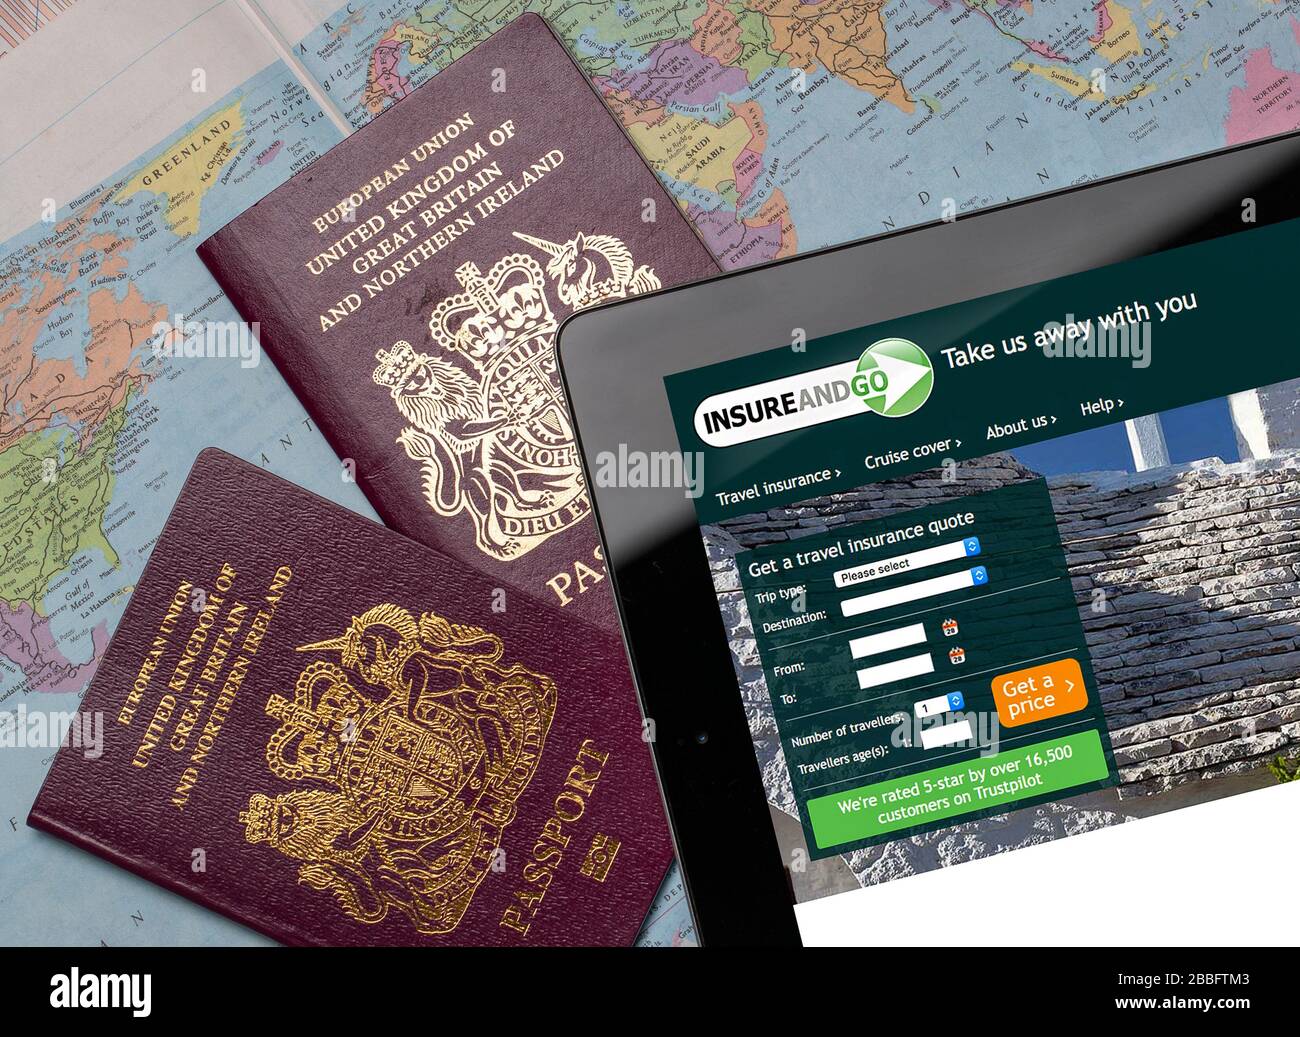 Versichern und gehen Sie auf einem iPad oder Tablet auf die Website der Reiseversicherung. (Nur redaktionelle Verwendung) Stockfoto